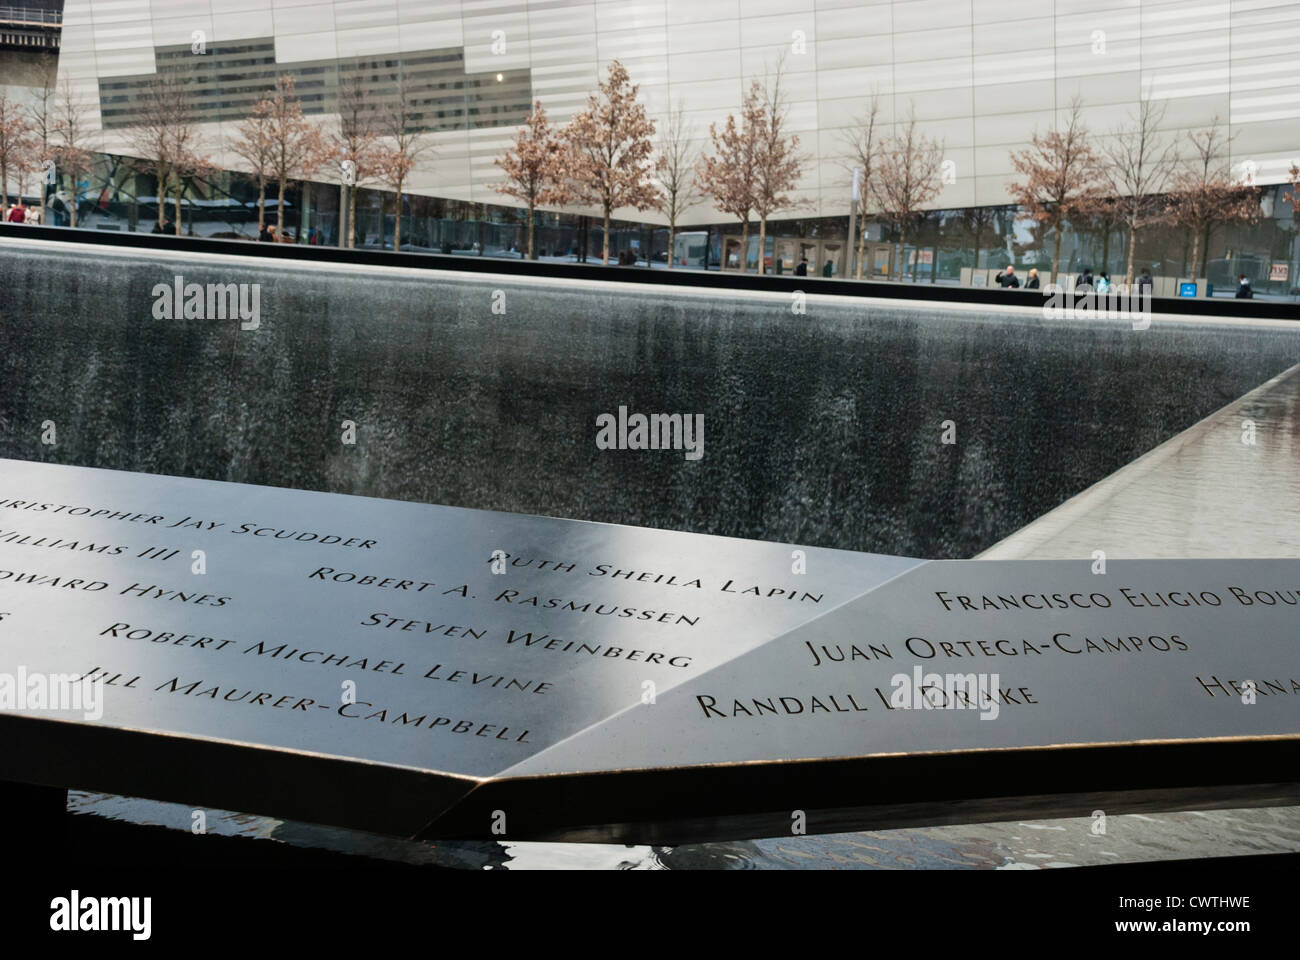 National Memorial del 11 de septiembre muestra nombres en el parapeto que rodea la piscina y el museo en el fondo. Foto de stock